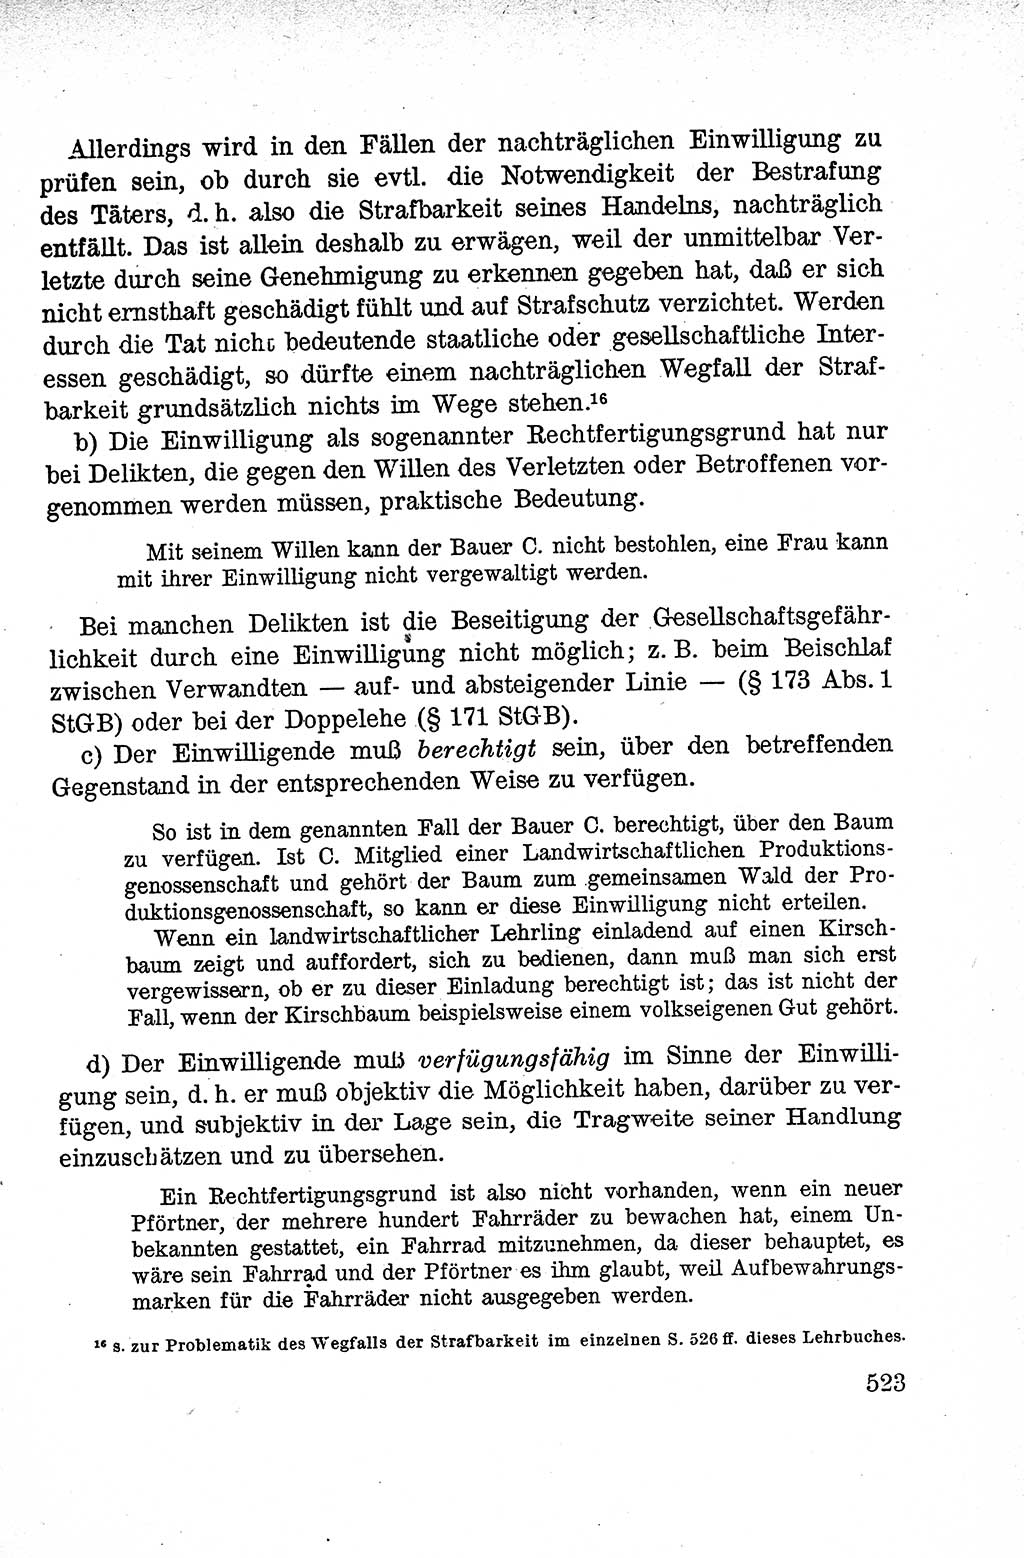 Lehrbuch des Strafrechts der Deutschen Demokratischen Republik (DDR), Allgemeiner Teil 1959, Seite 523 (Lb. Strafr. DDR AT 1959, S. 523)